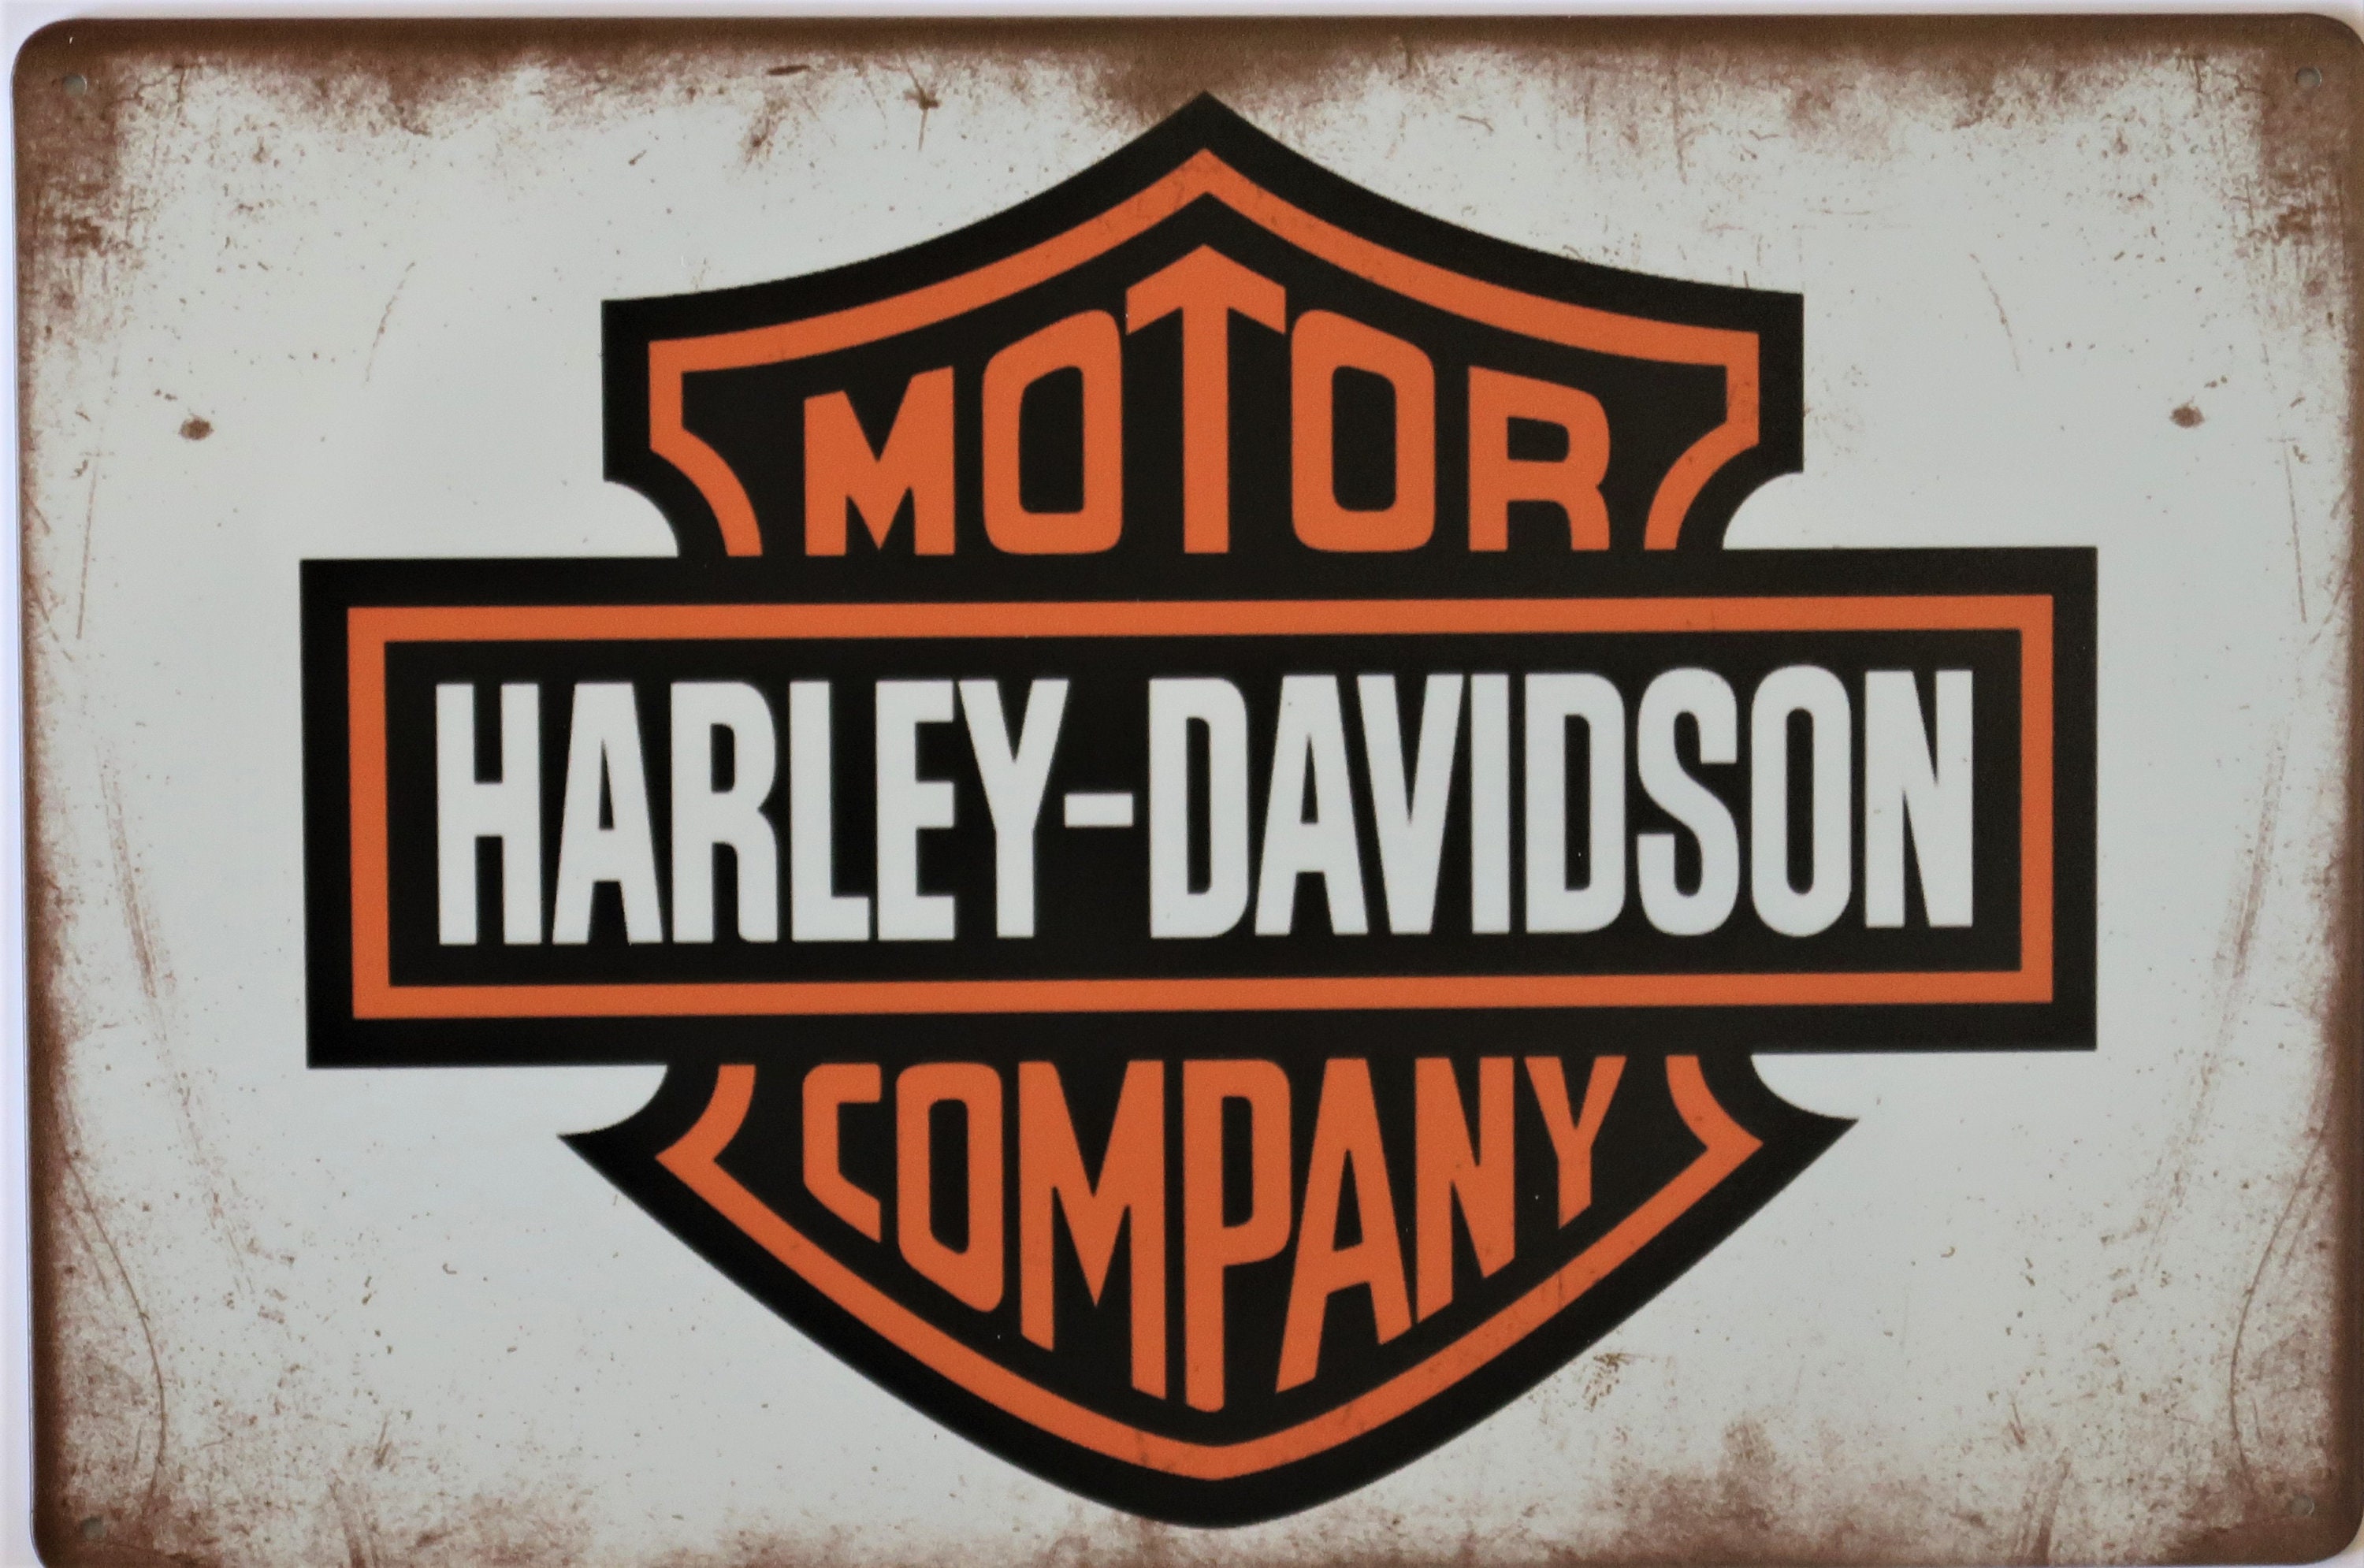 Harley Davidson Parking Only embossed metal sign a4 vintage style garage man bar 